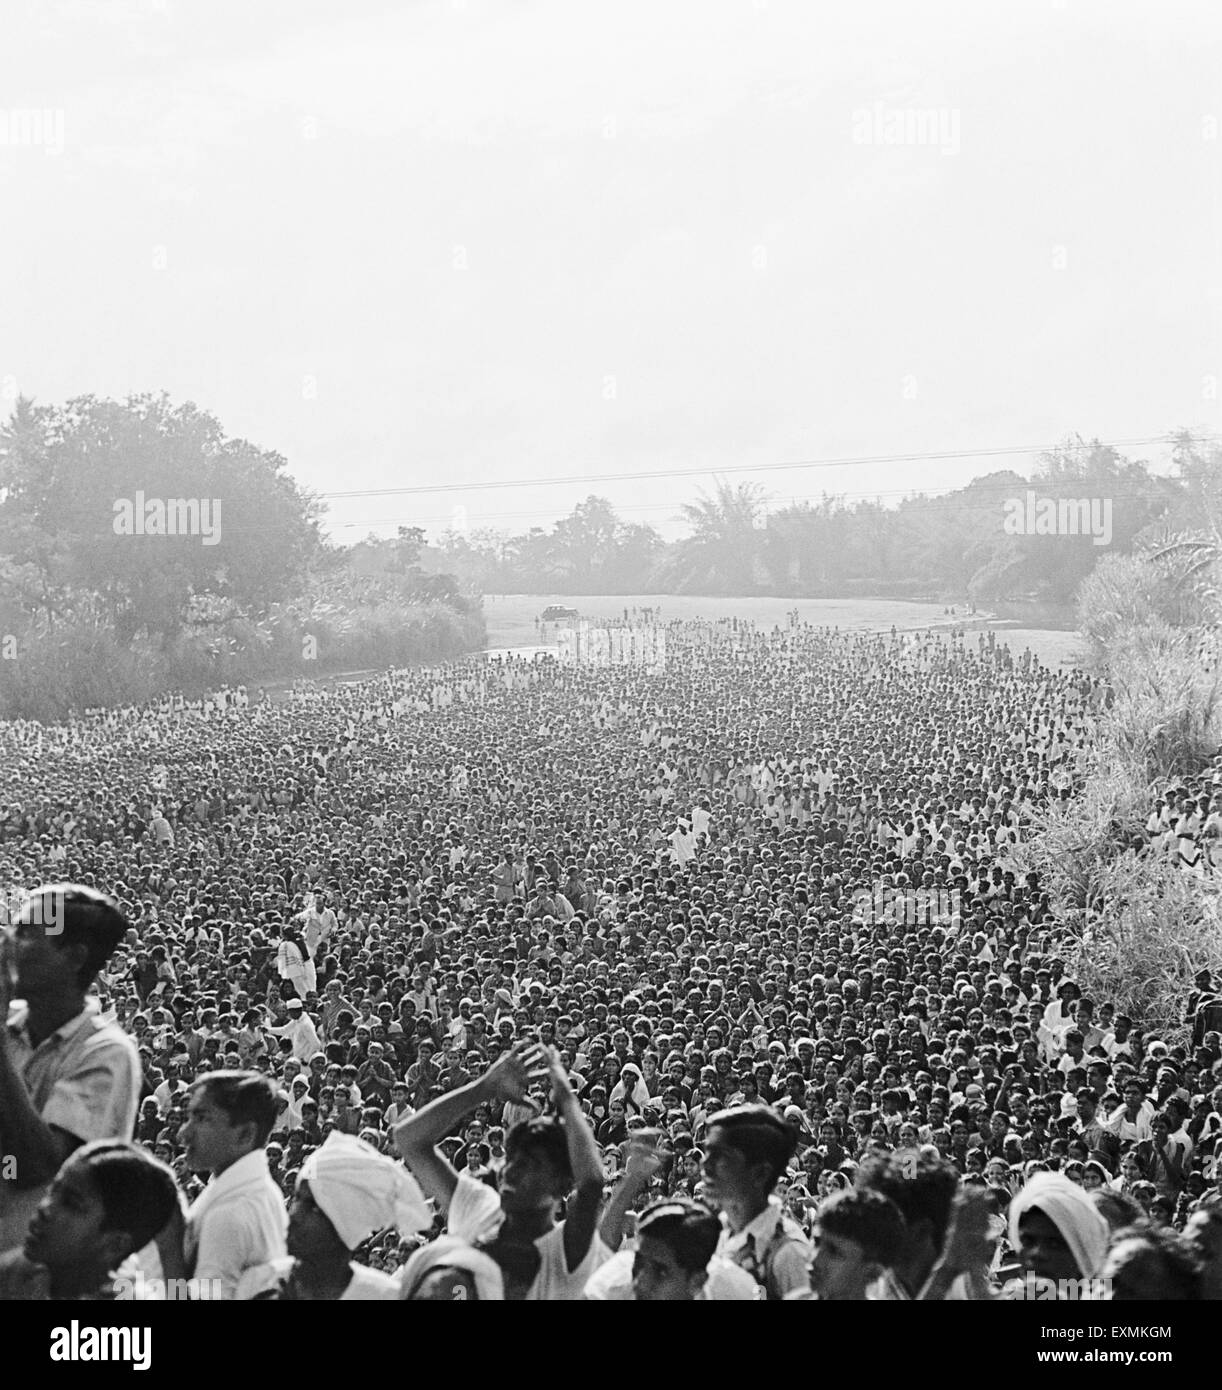 Massen von Menschen wollen Mahatma Gandhi in Madras, Indien, Asien, alten Jahrgang 1900s Bild zu treffen Stockfoto